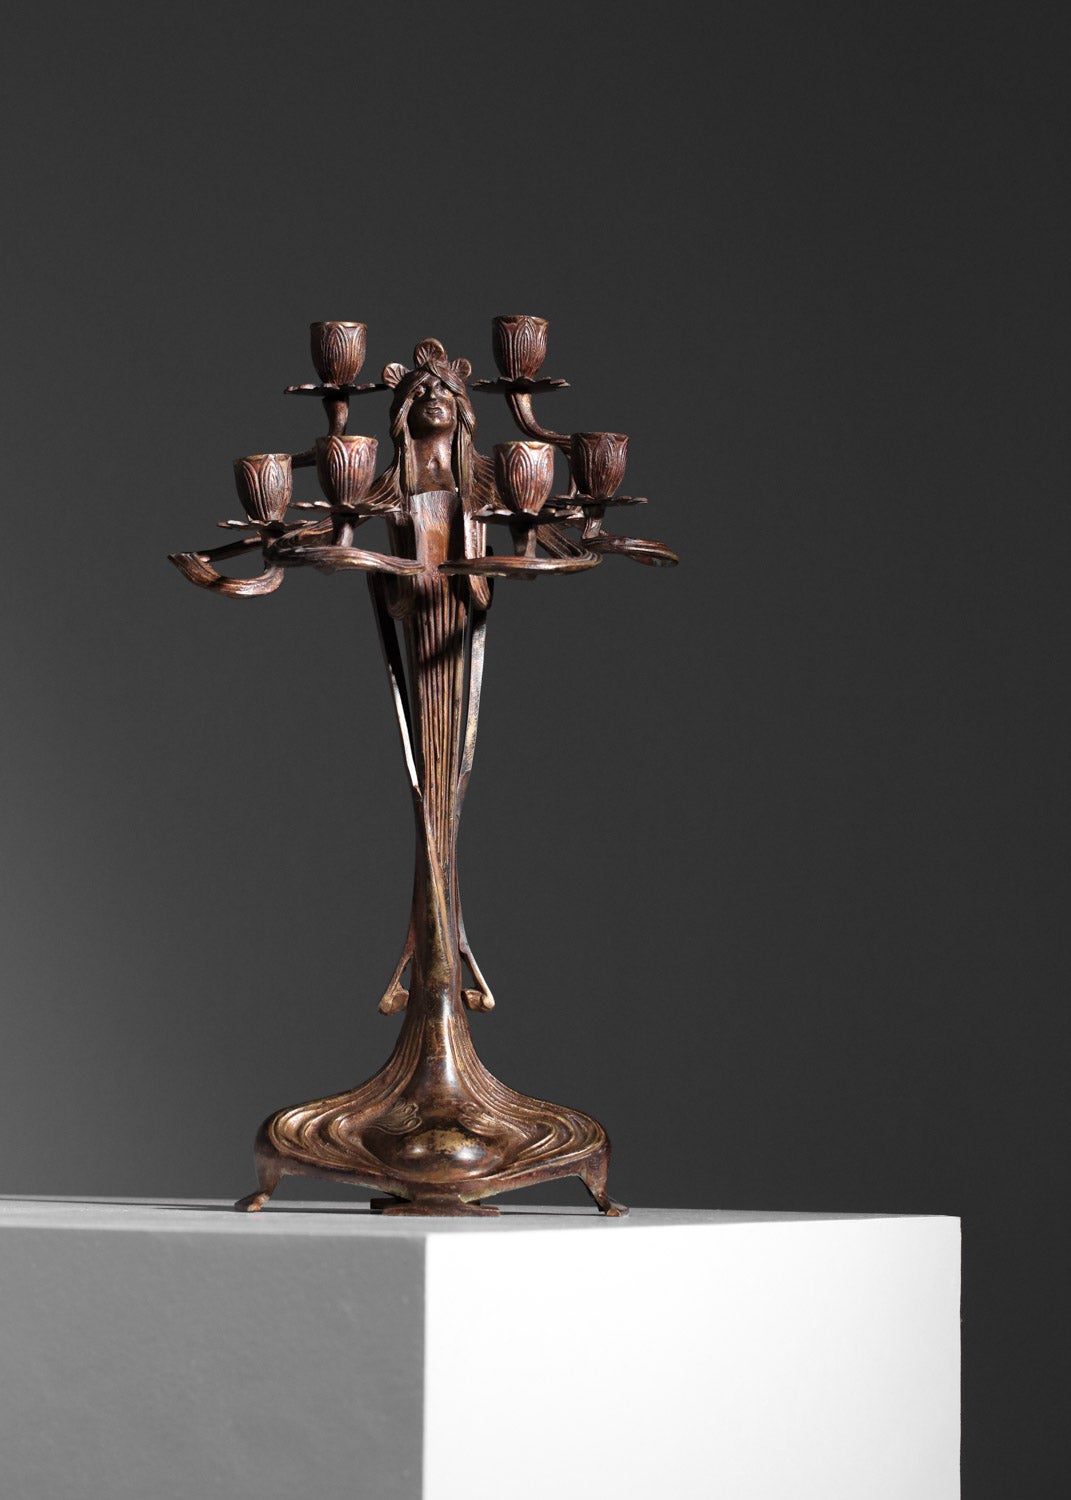 Ein Paar Jugendstil-Kerzenhalter aus den 1920er Jahren vom österreichischen Hersteller Urania Imperial Zinn. Die beiden Kandelaber sind aus massiver, patinierter Bronze und stellen eine Frau mit sechs Zweigen dar, an deren Ende Lotusblüten als